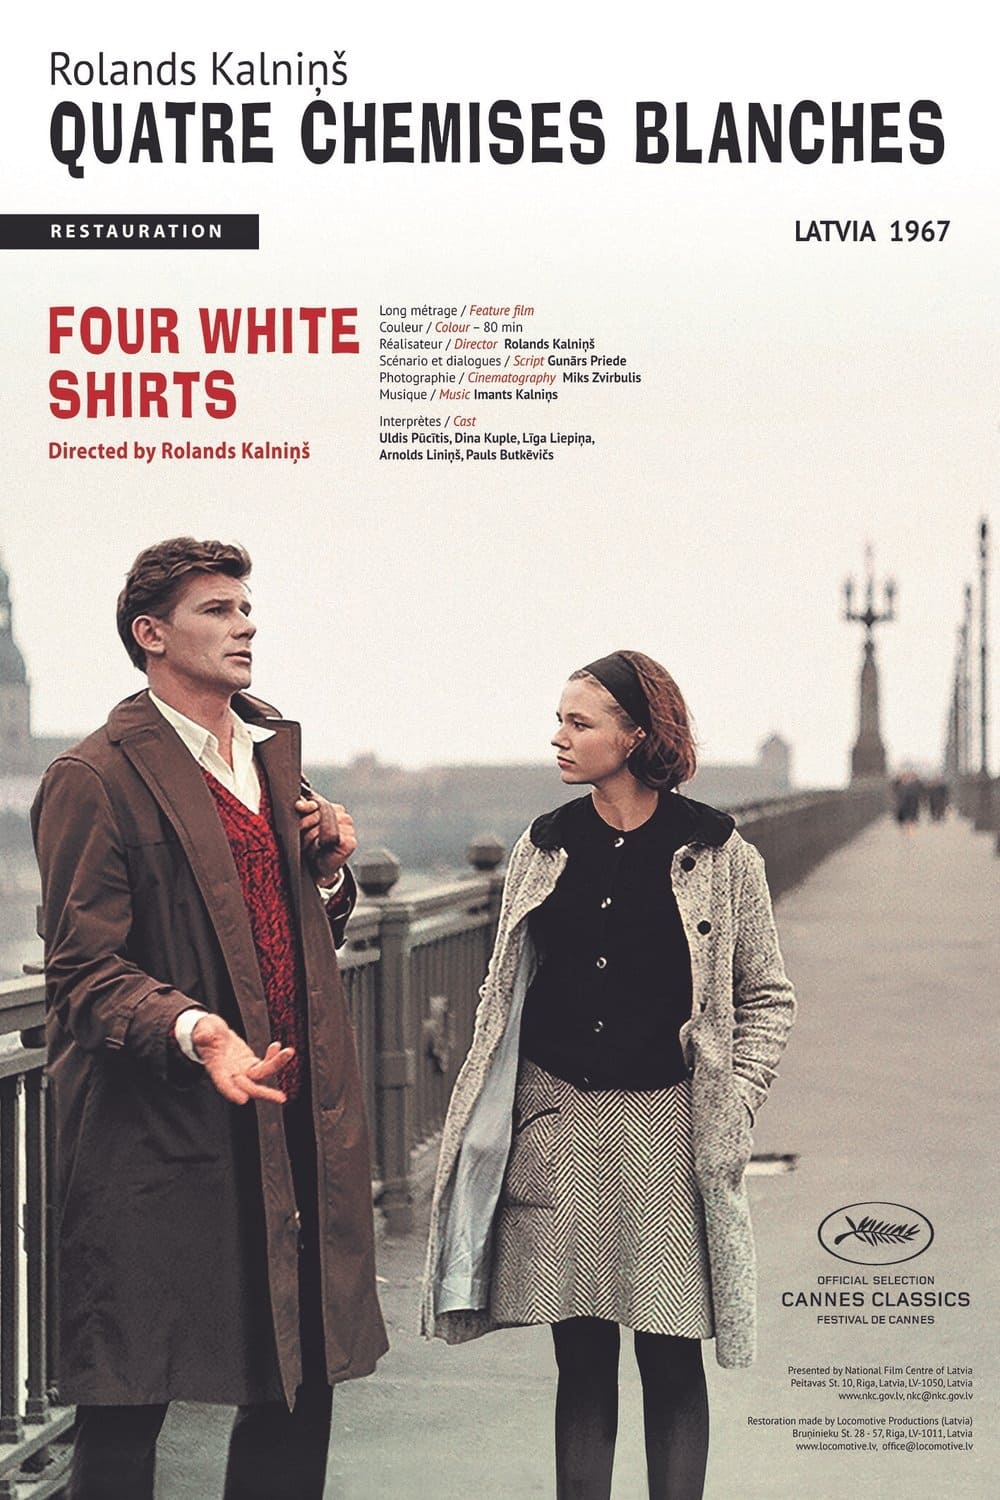 Four White Shirts